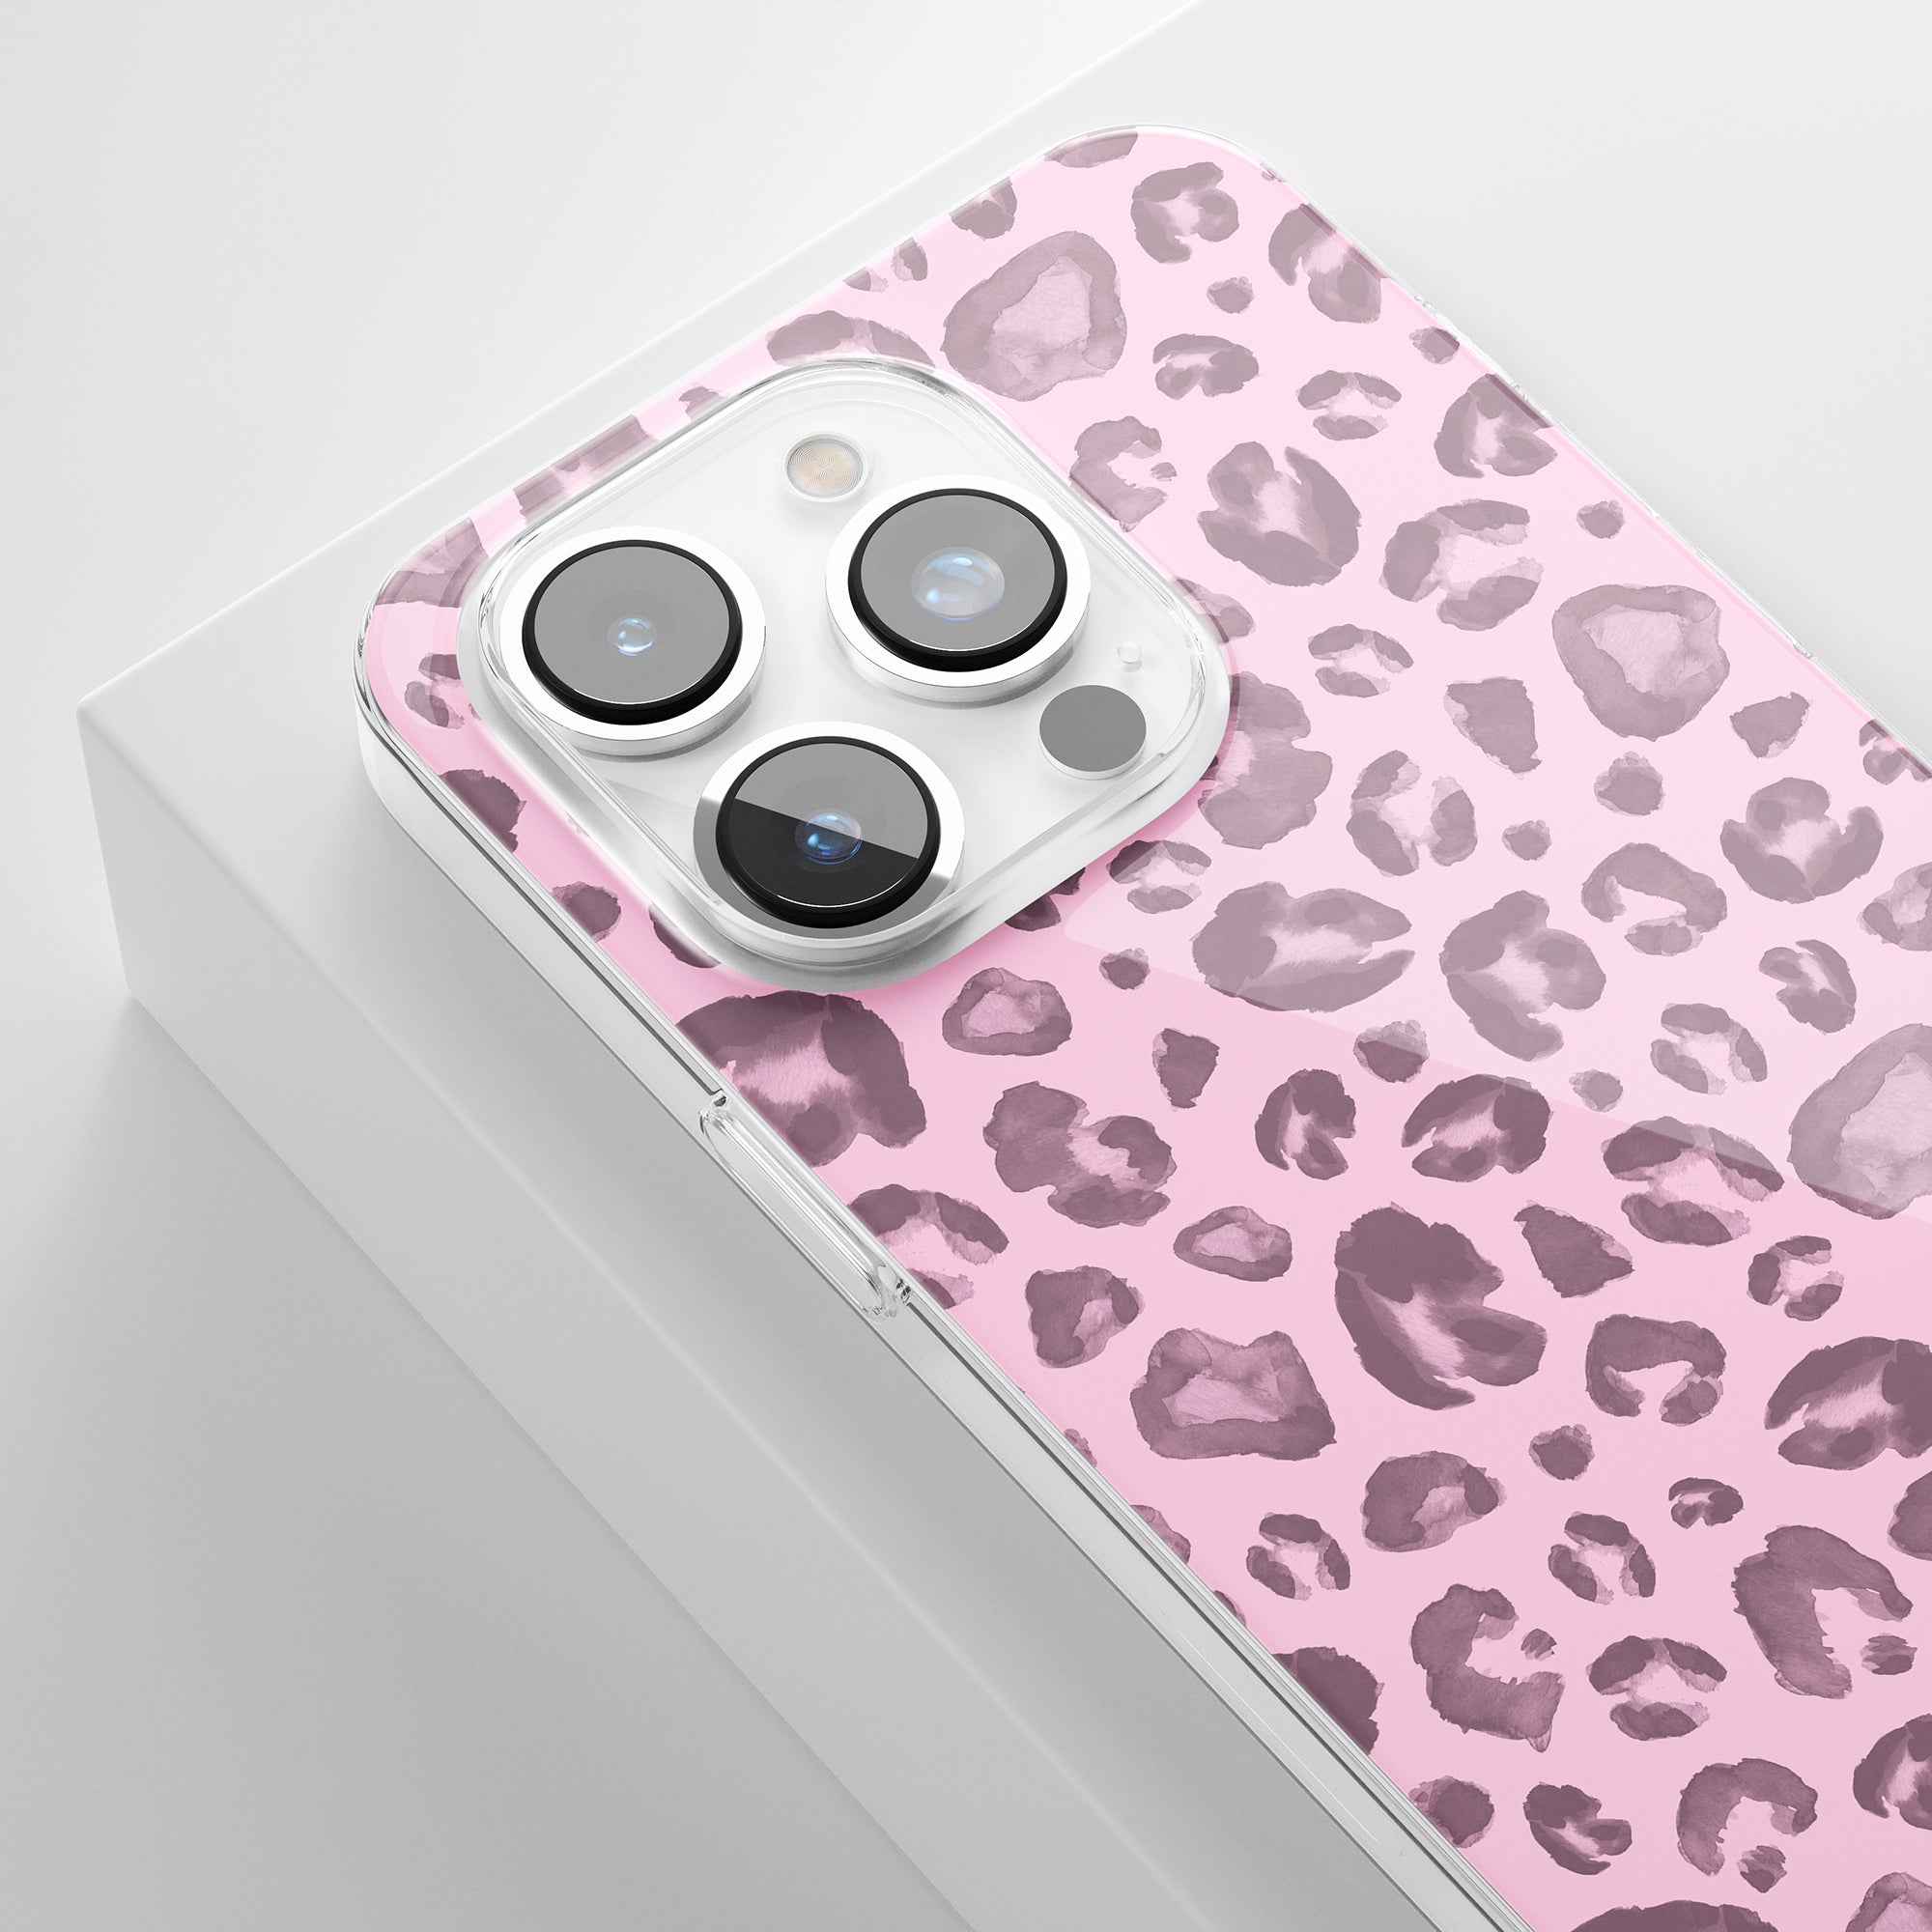 A Pinky Spots - genomskinligt fodral för iPhone 11 Pro.